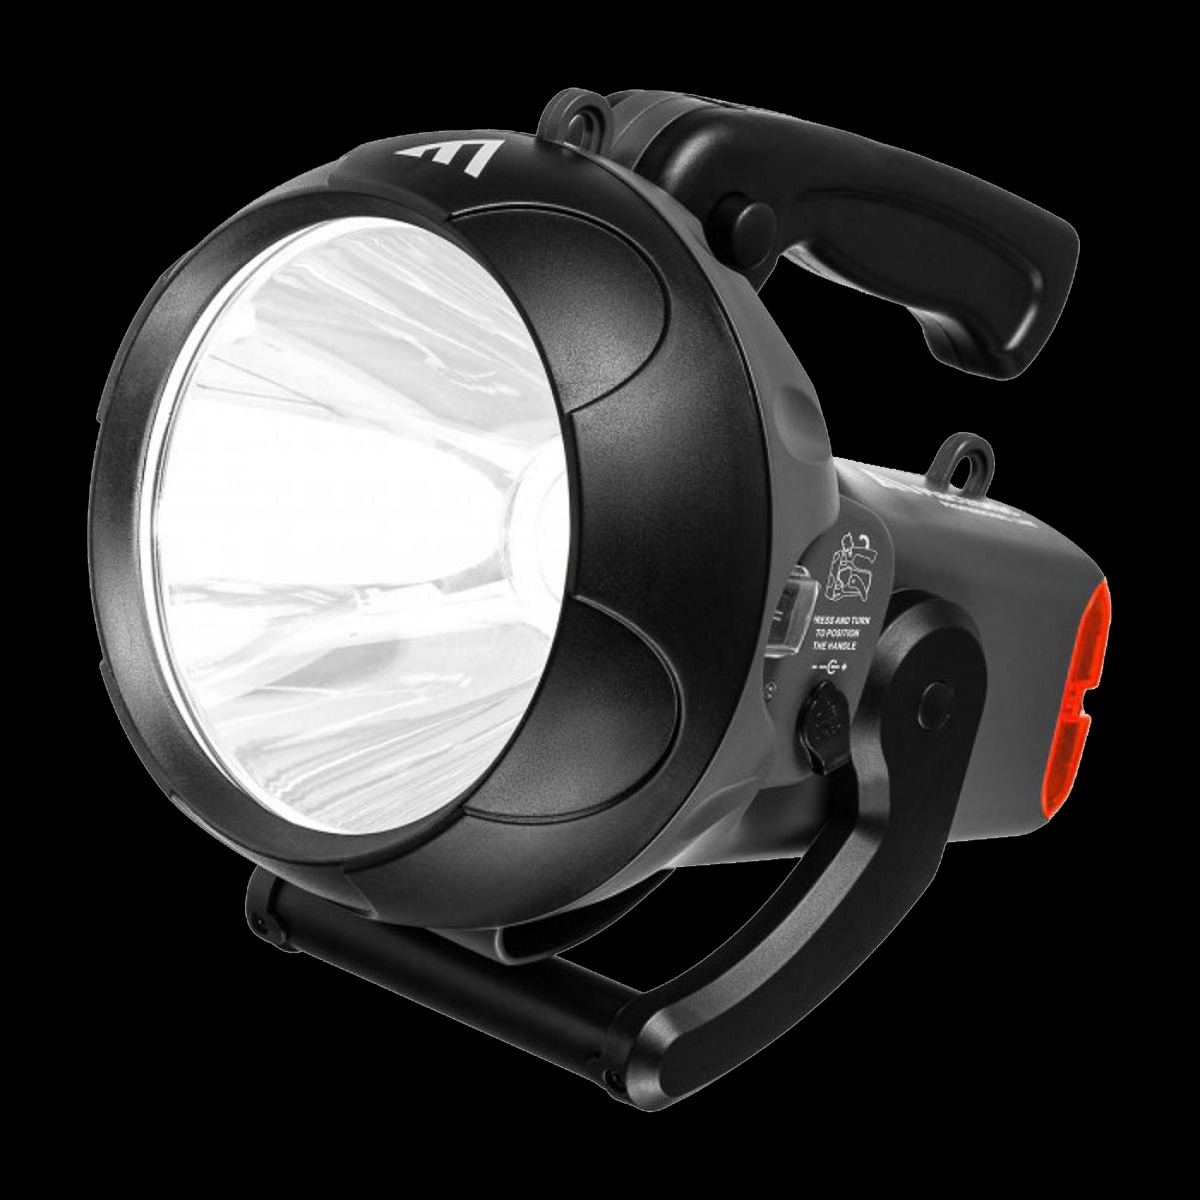 Wiederaufladbarer Suchscheinwerfer mit rückwärtigem Blinklicht, 1600 lm, Vanguard JML